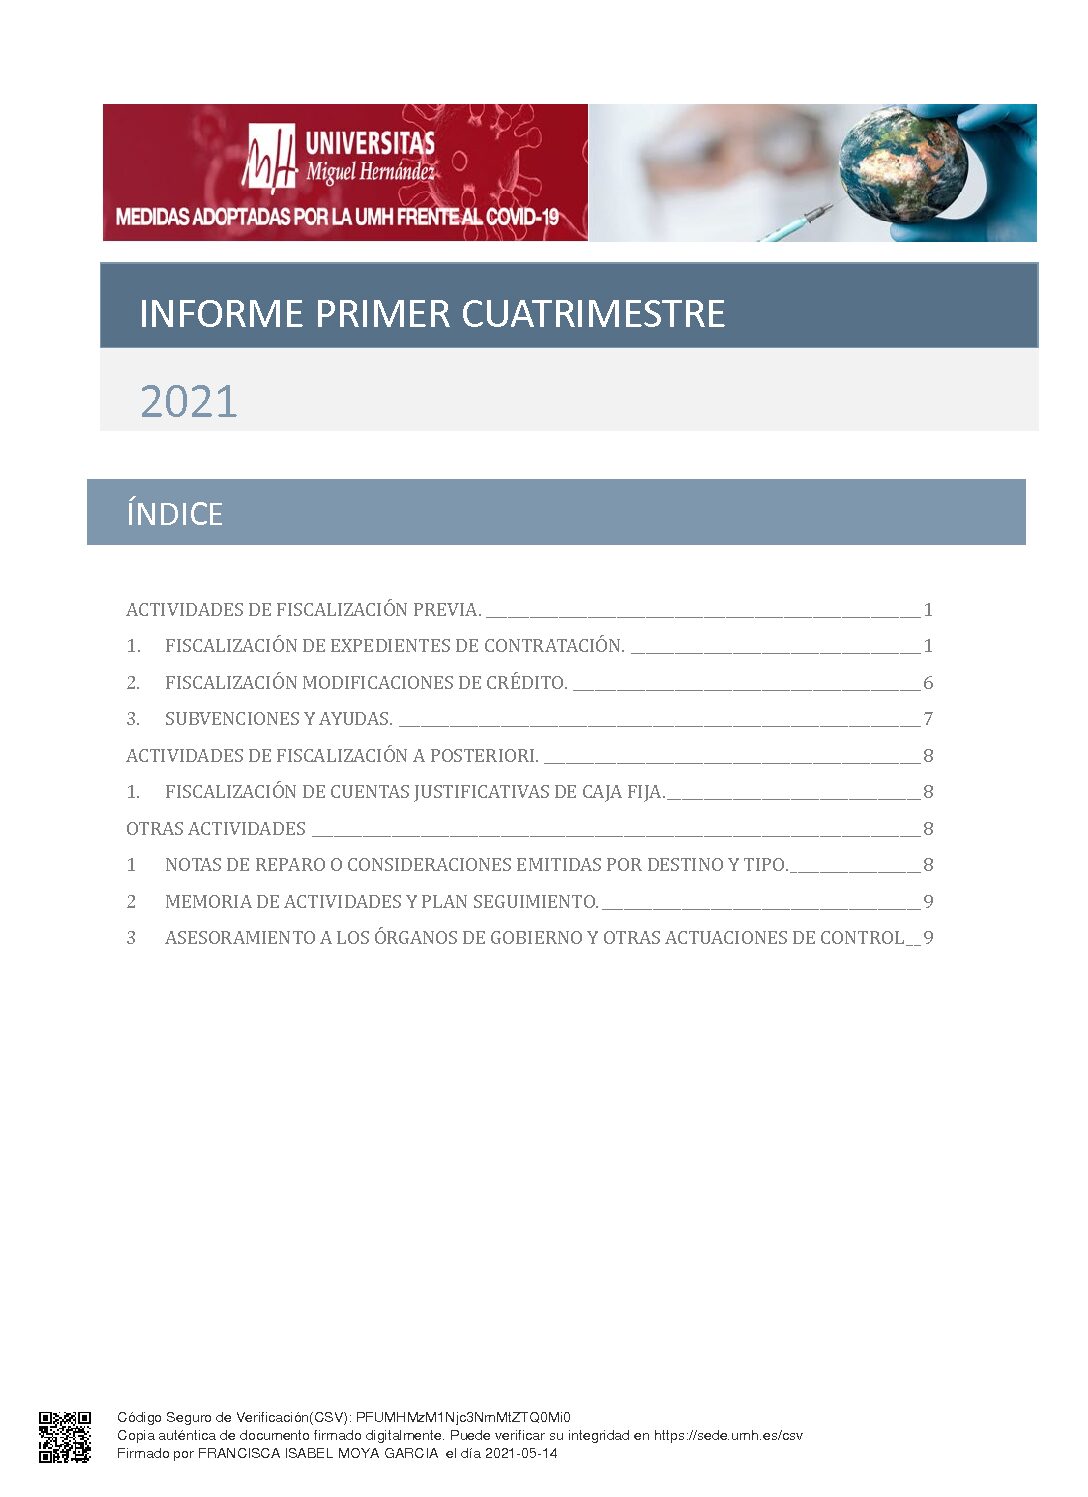 INFORME PRIMER CUATRIMESTRE 2021 EN PDF